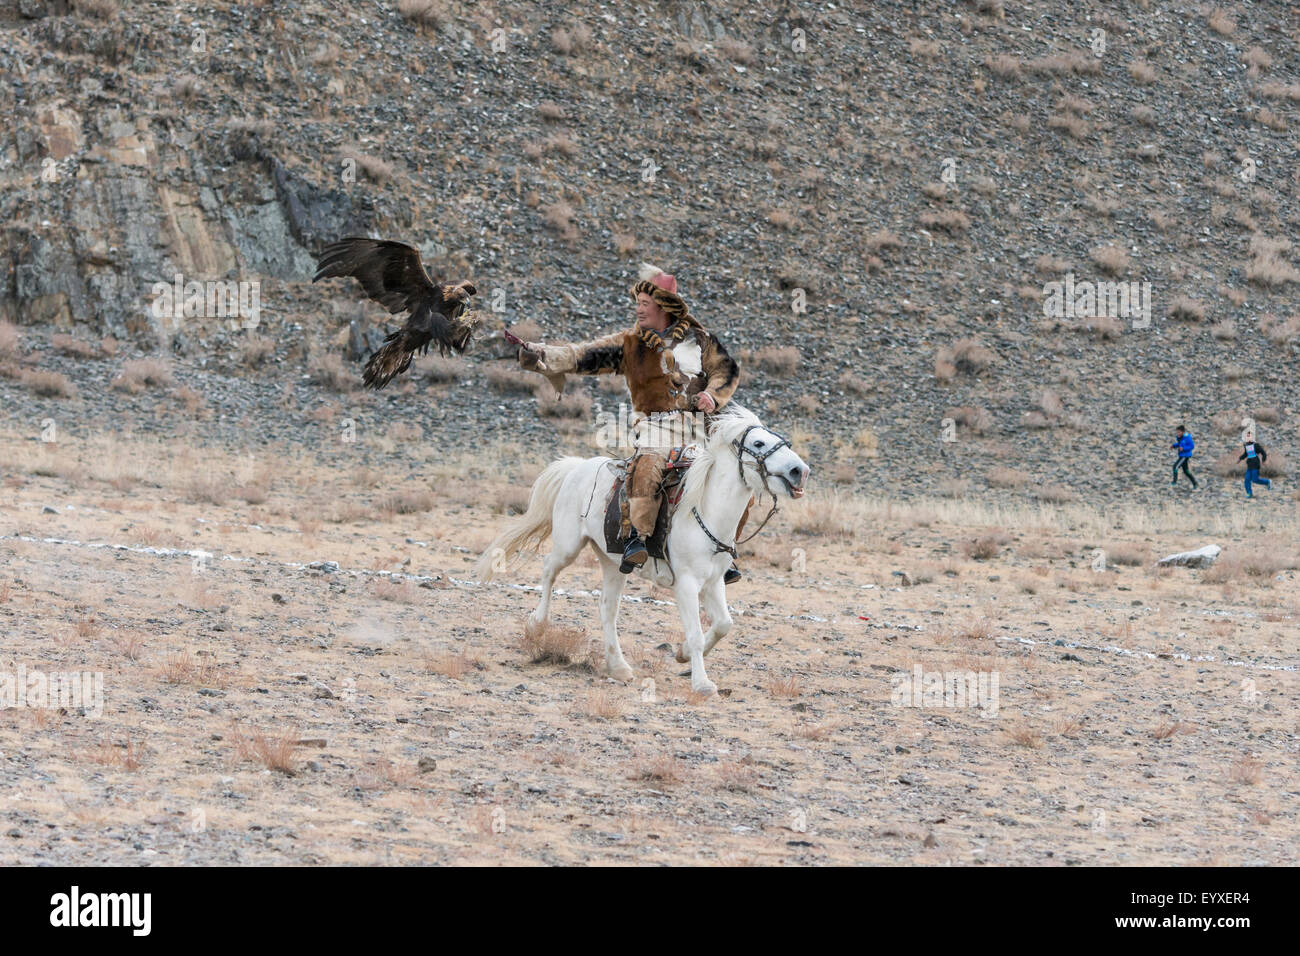 Le leurre, eagle Eagle Festival, Olgii, l'ouest de la Mongolie Banque D'Images